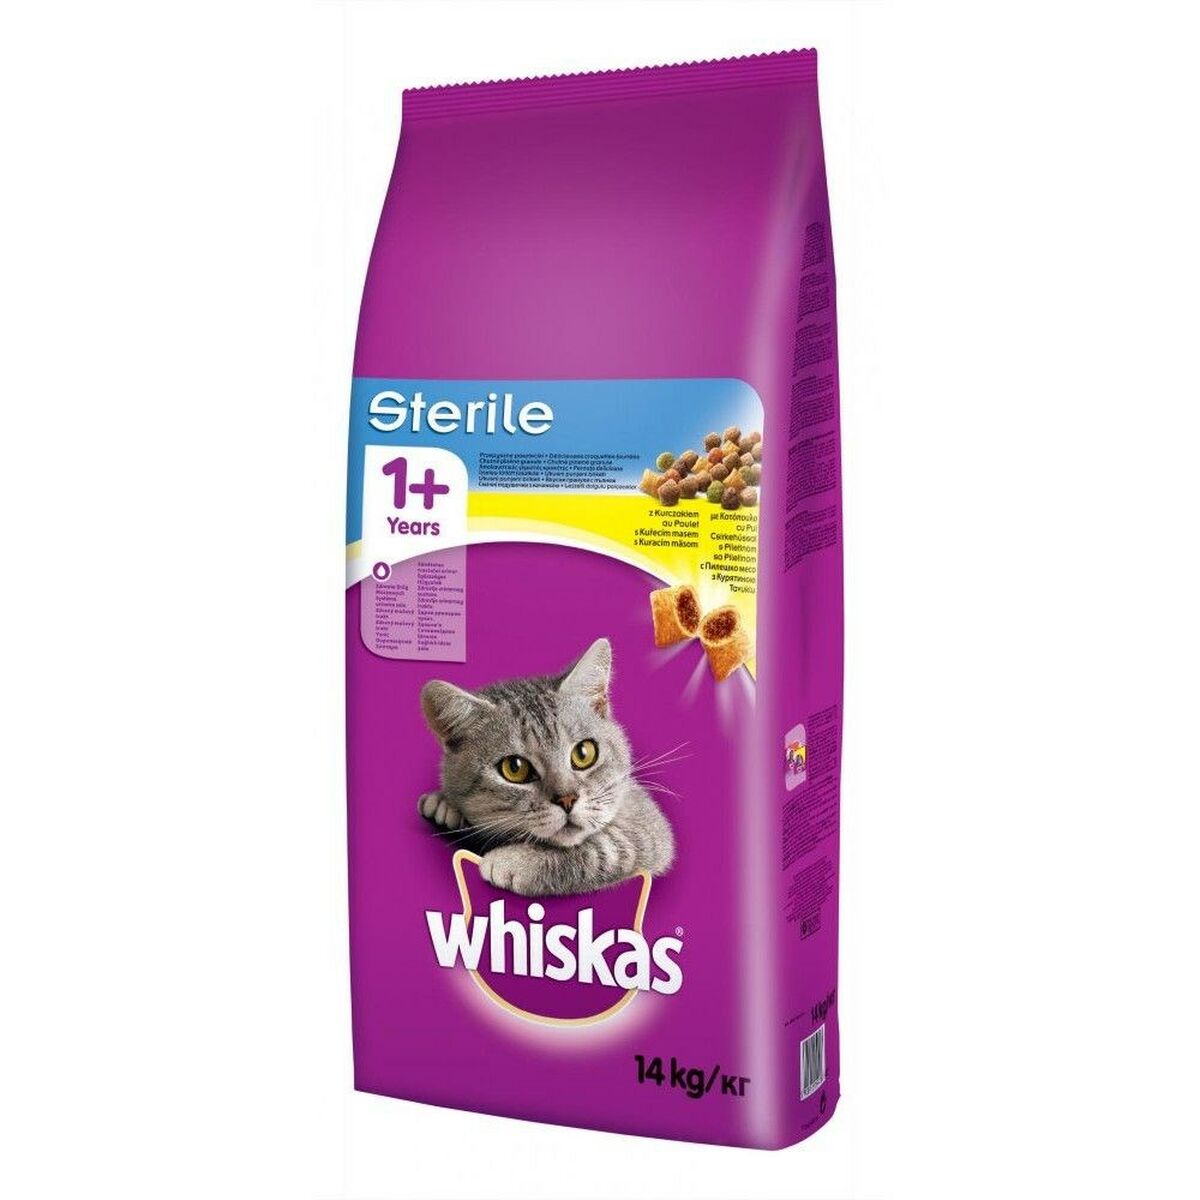 Aliments pour chat Whiskas STERILE Adulte Poulet 14 Kg